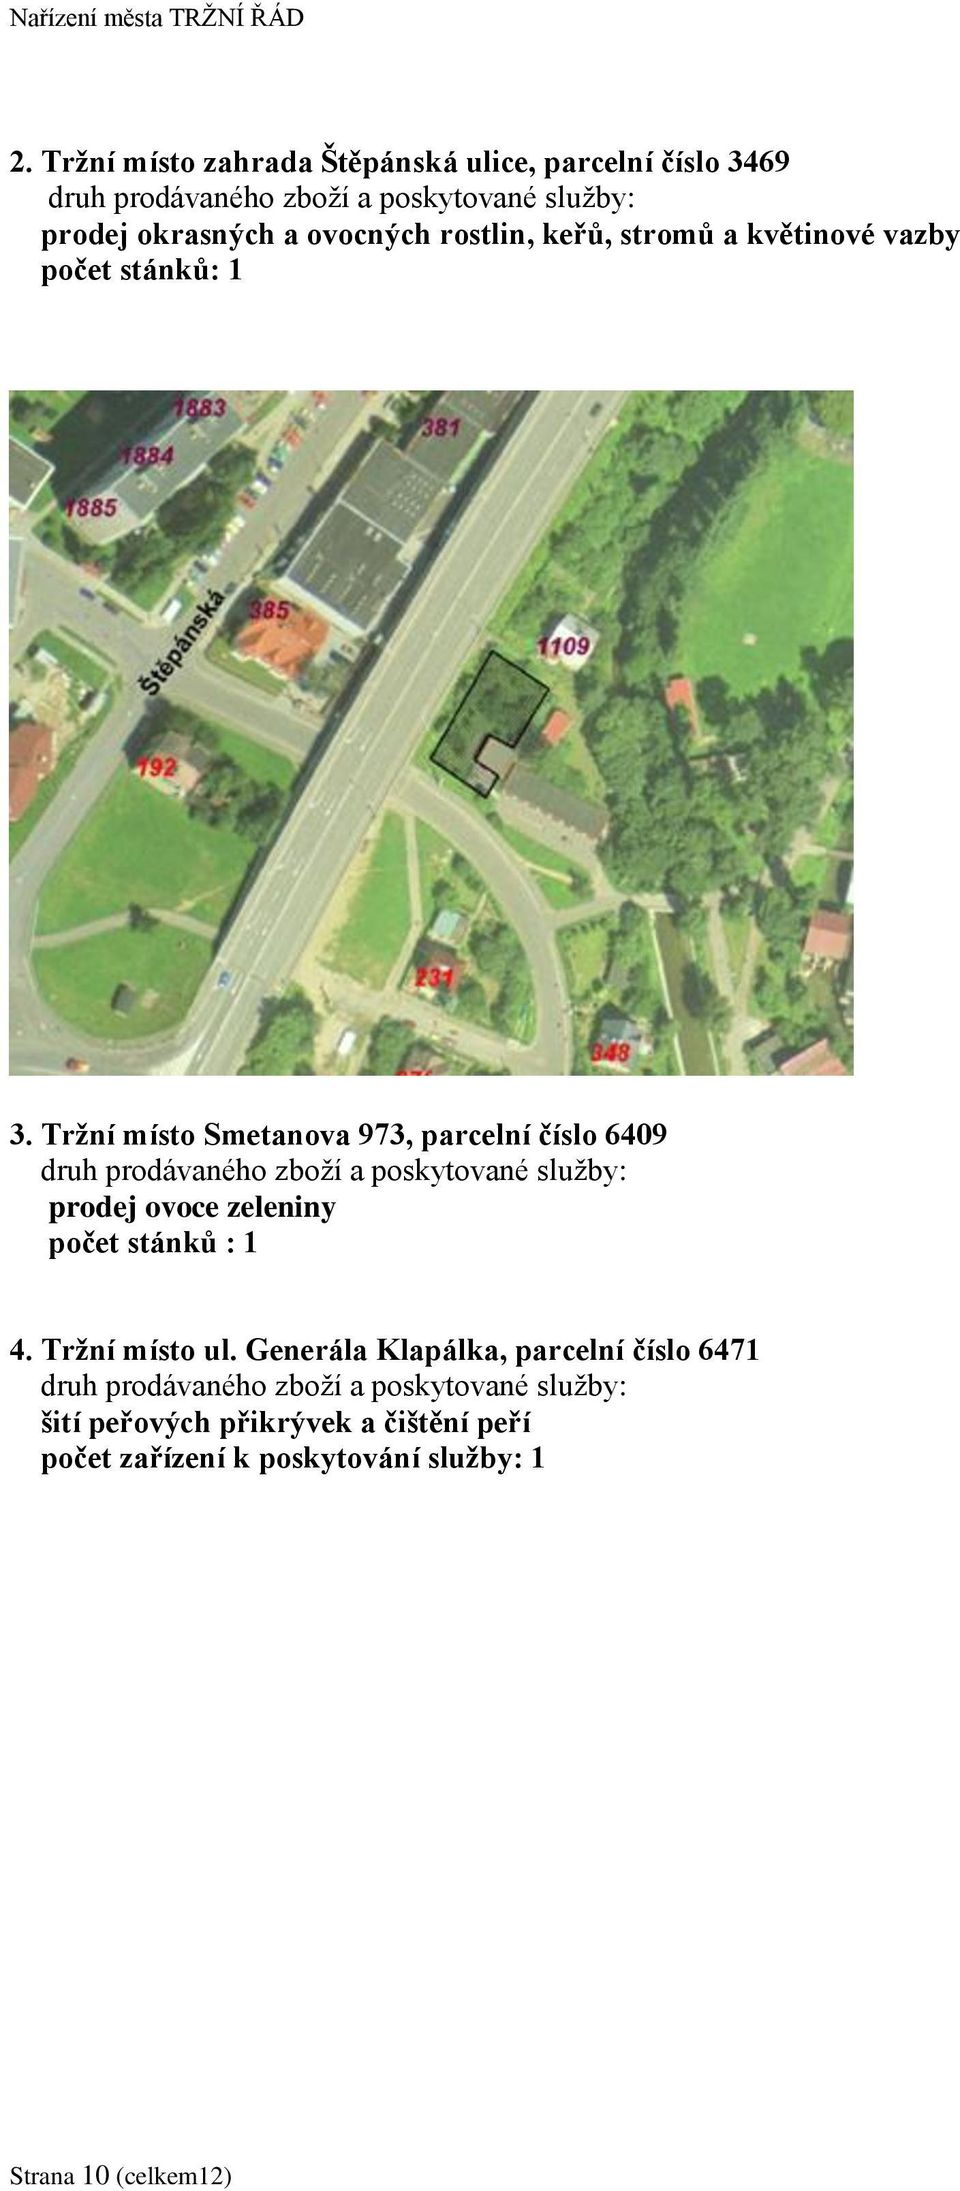 Trţní místo Smetanova 973, parcelní číslo 6409 prodej ovoce zeleniny počet stánků : 1 4.